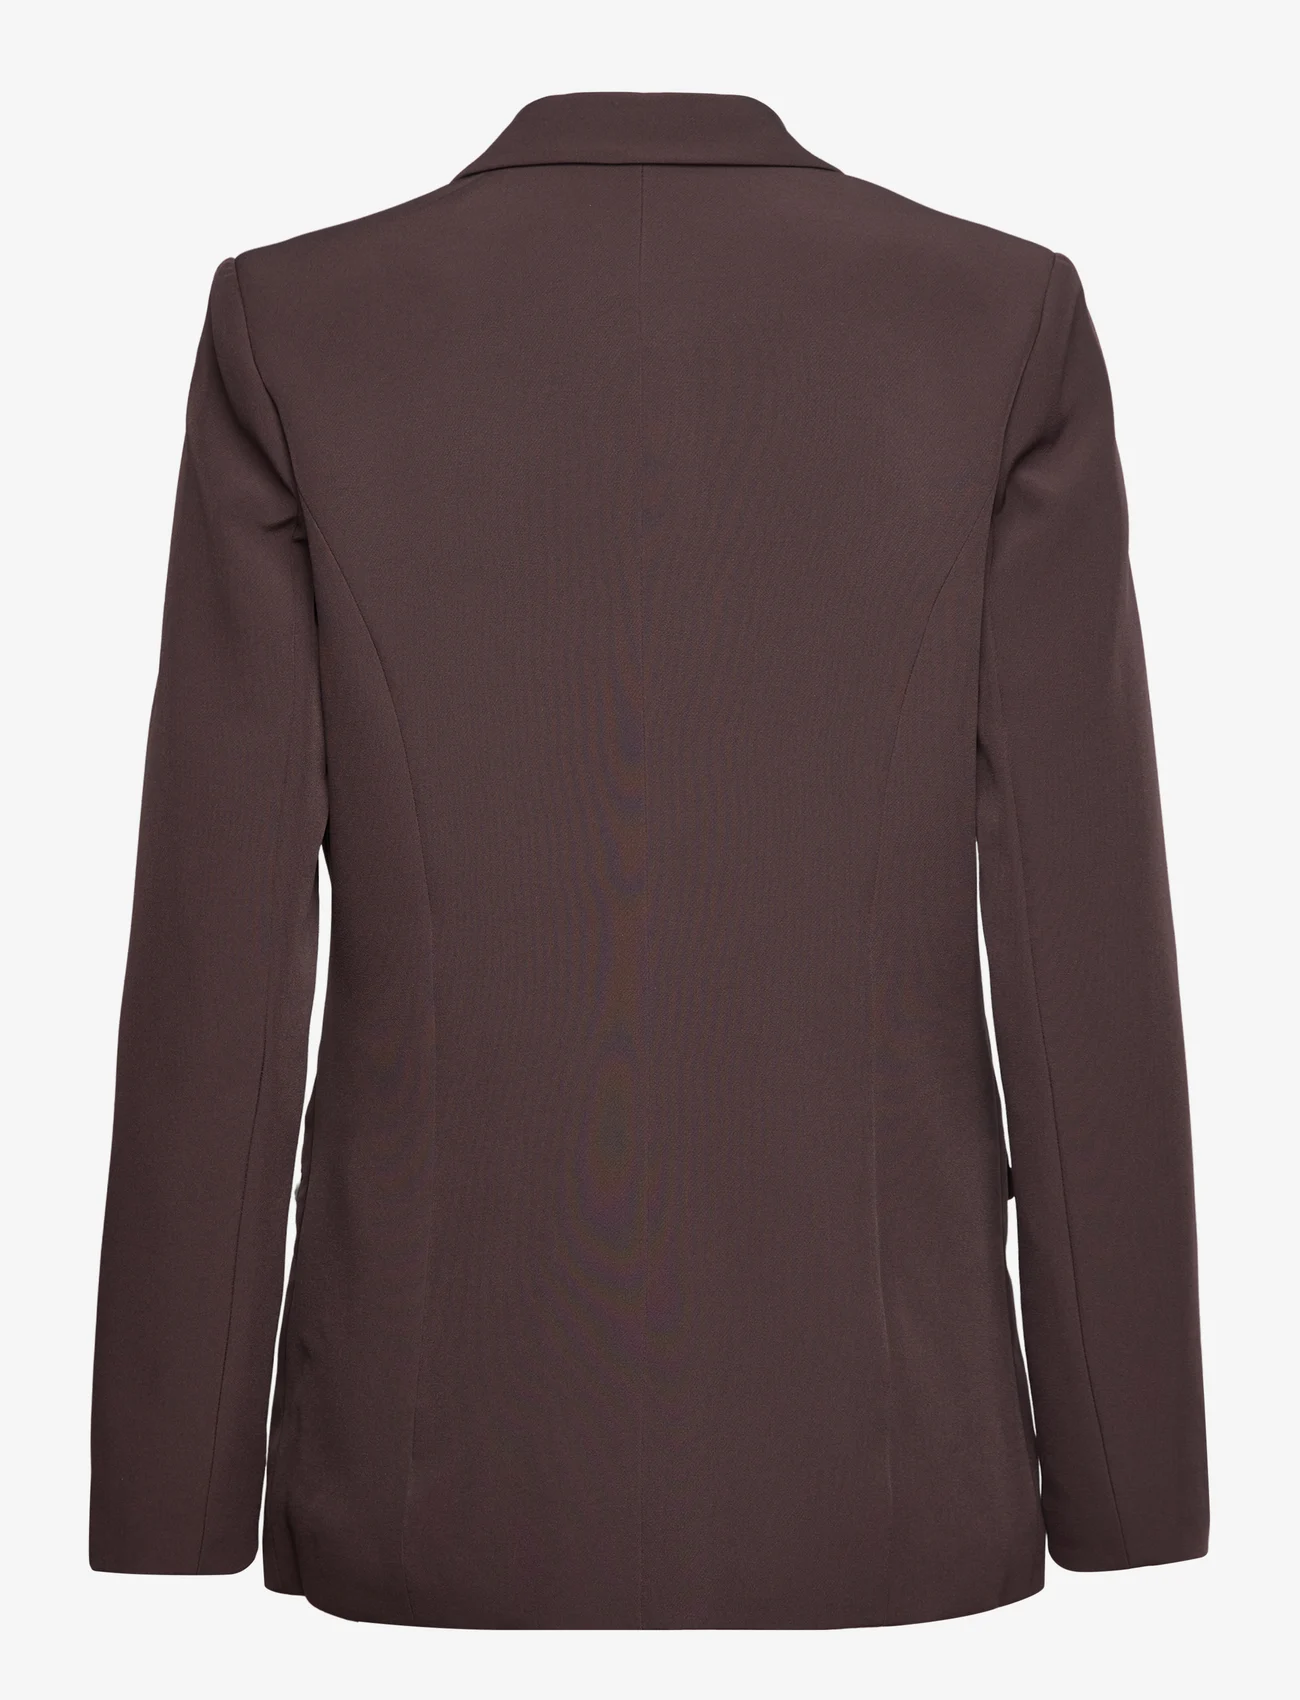 Rosemunde - Blazer - feestelijke kleding voor outlet-prijzen - black brown - 1